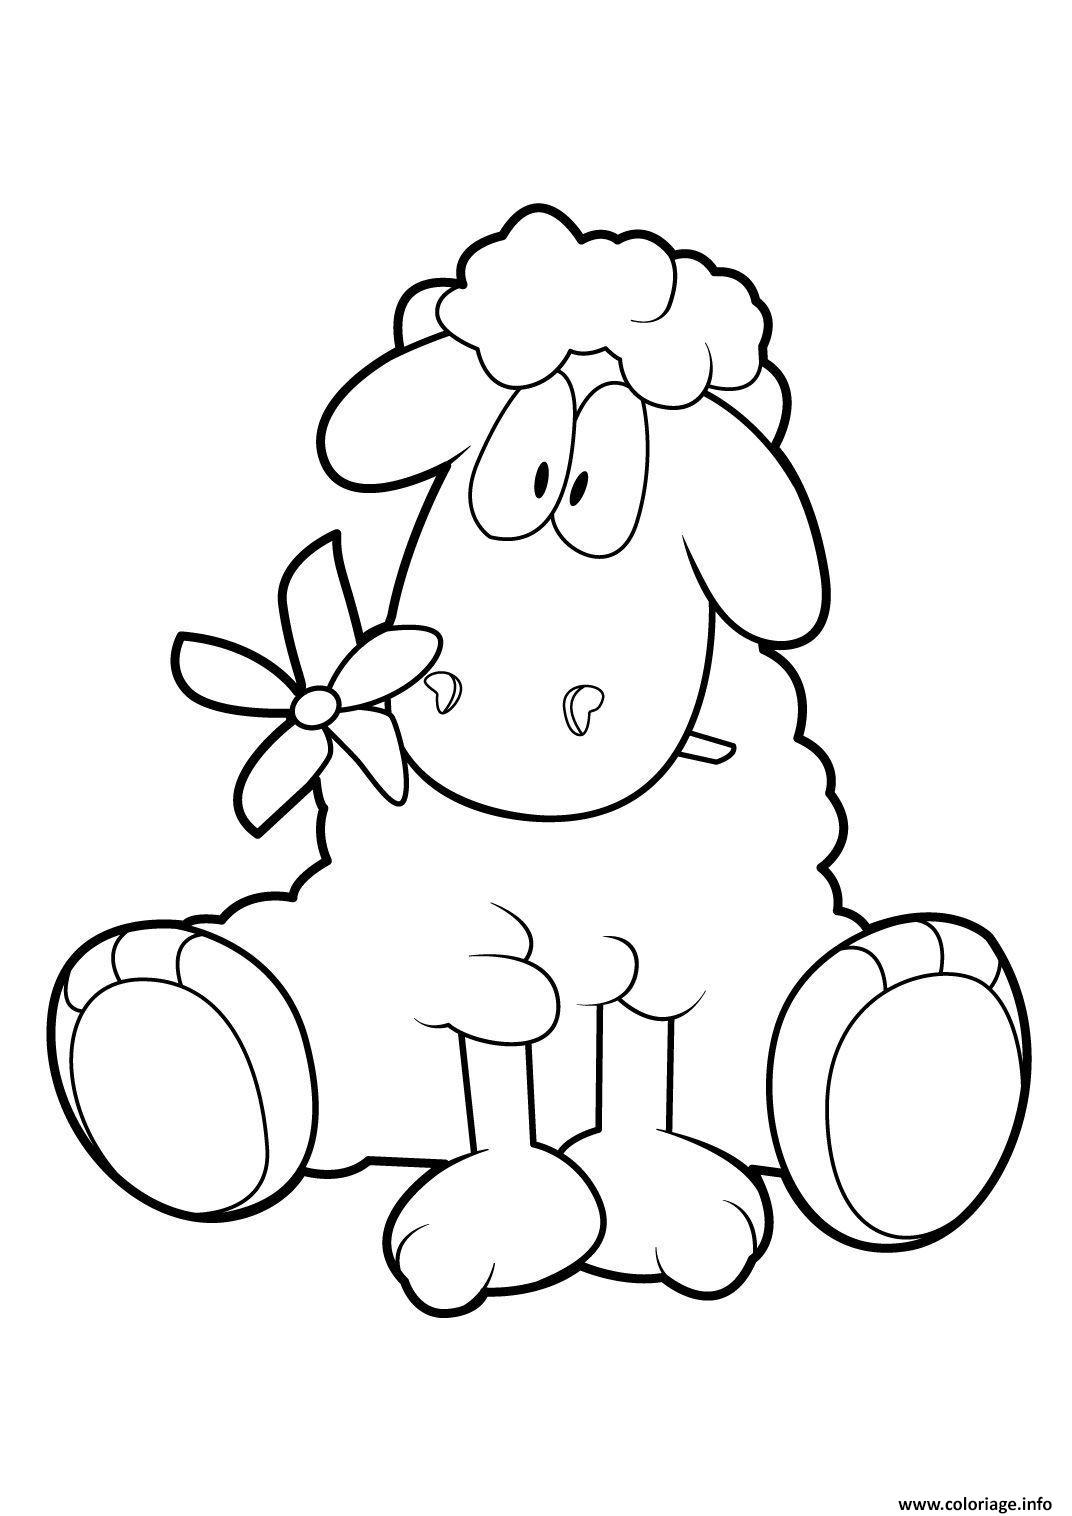 Coloriage Mouton 18 Dessin Gulli À Imprimer dedans Dessin Mouton 